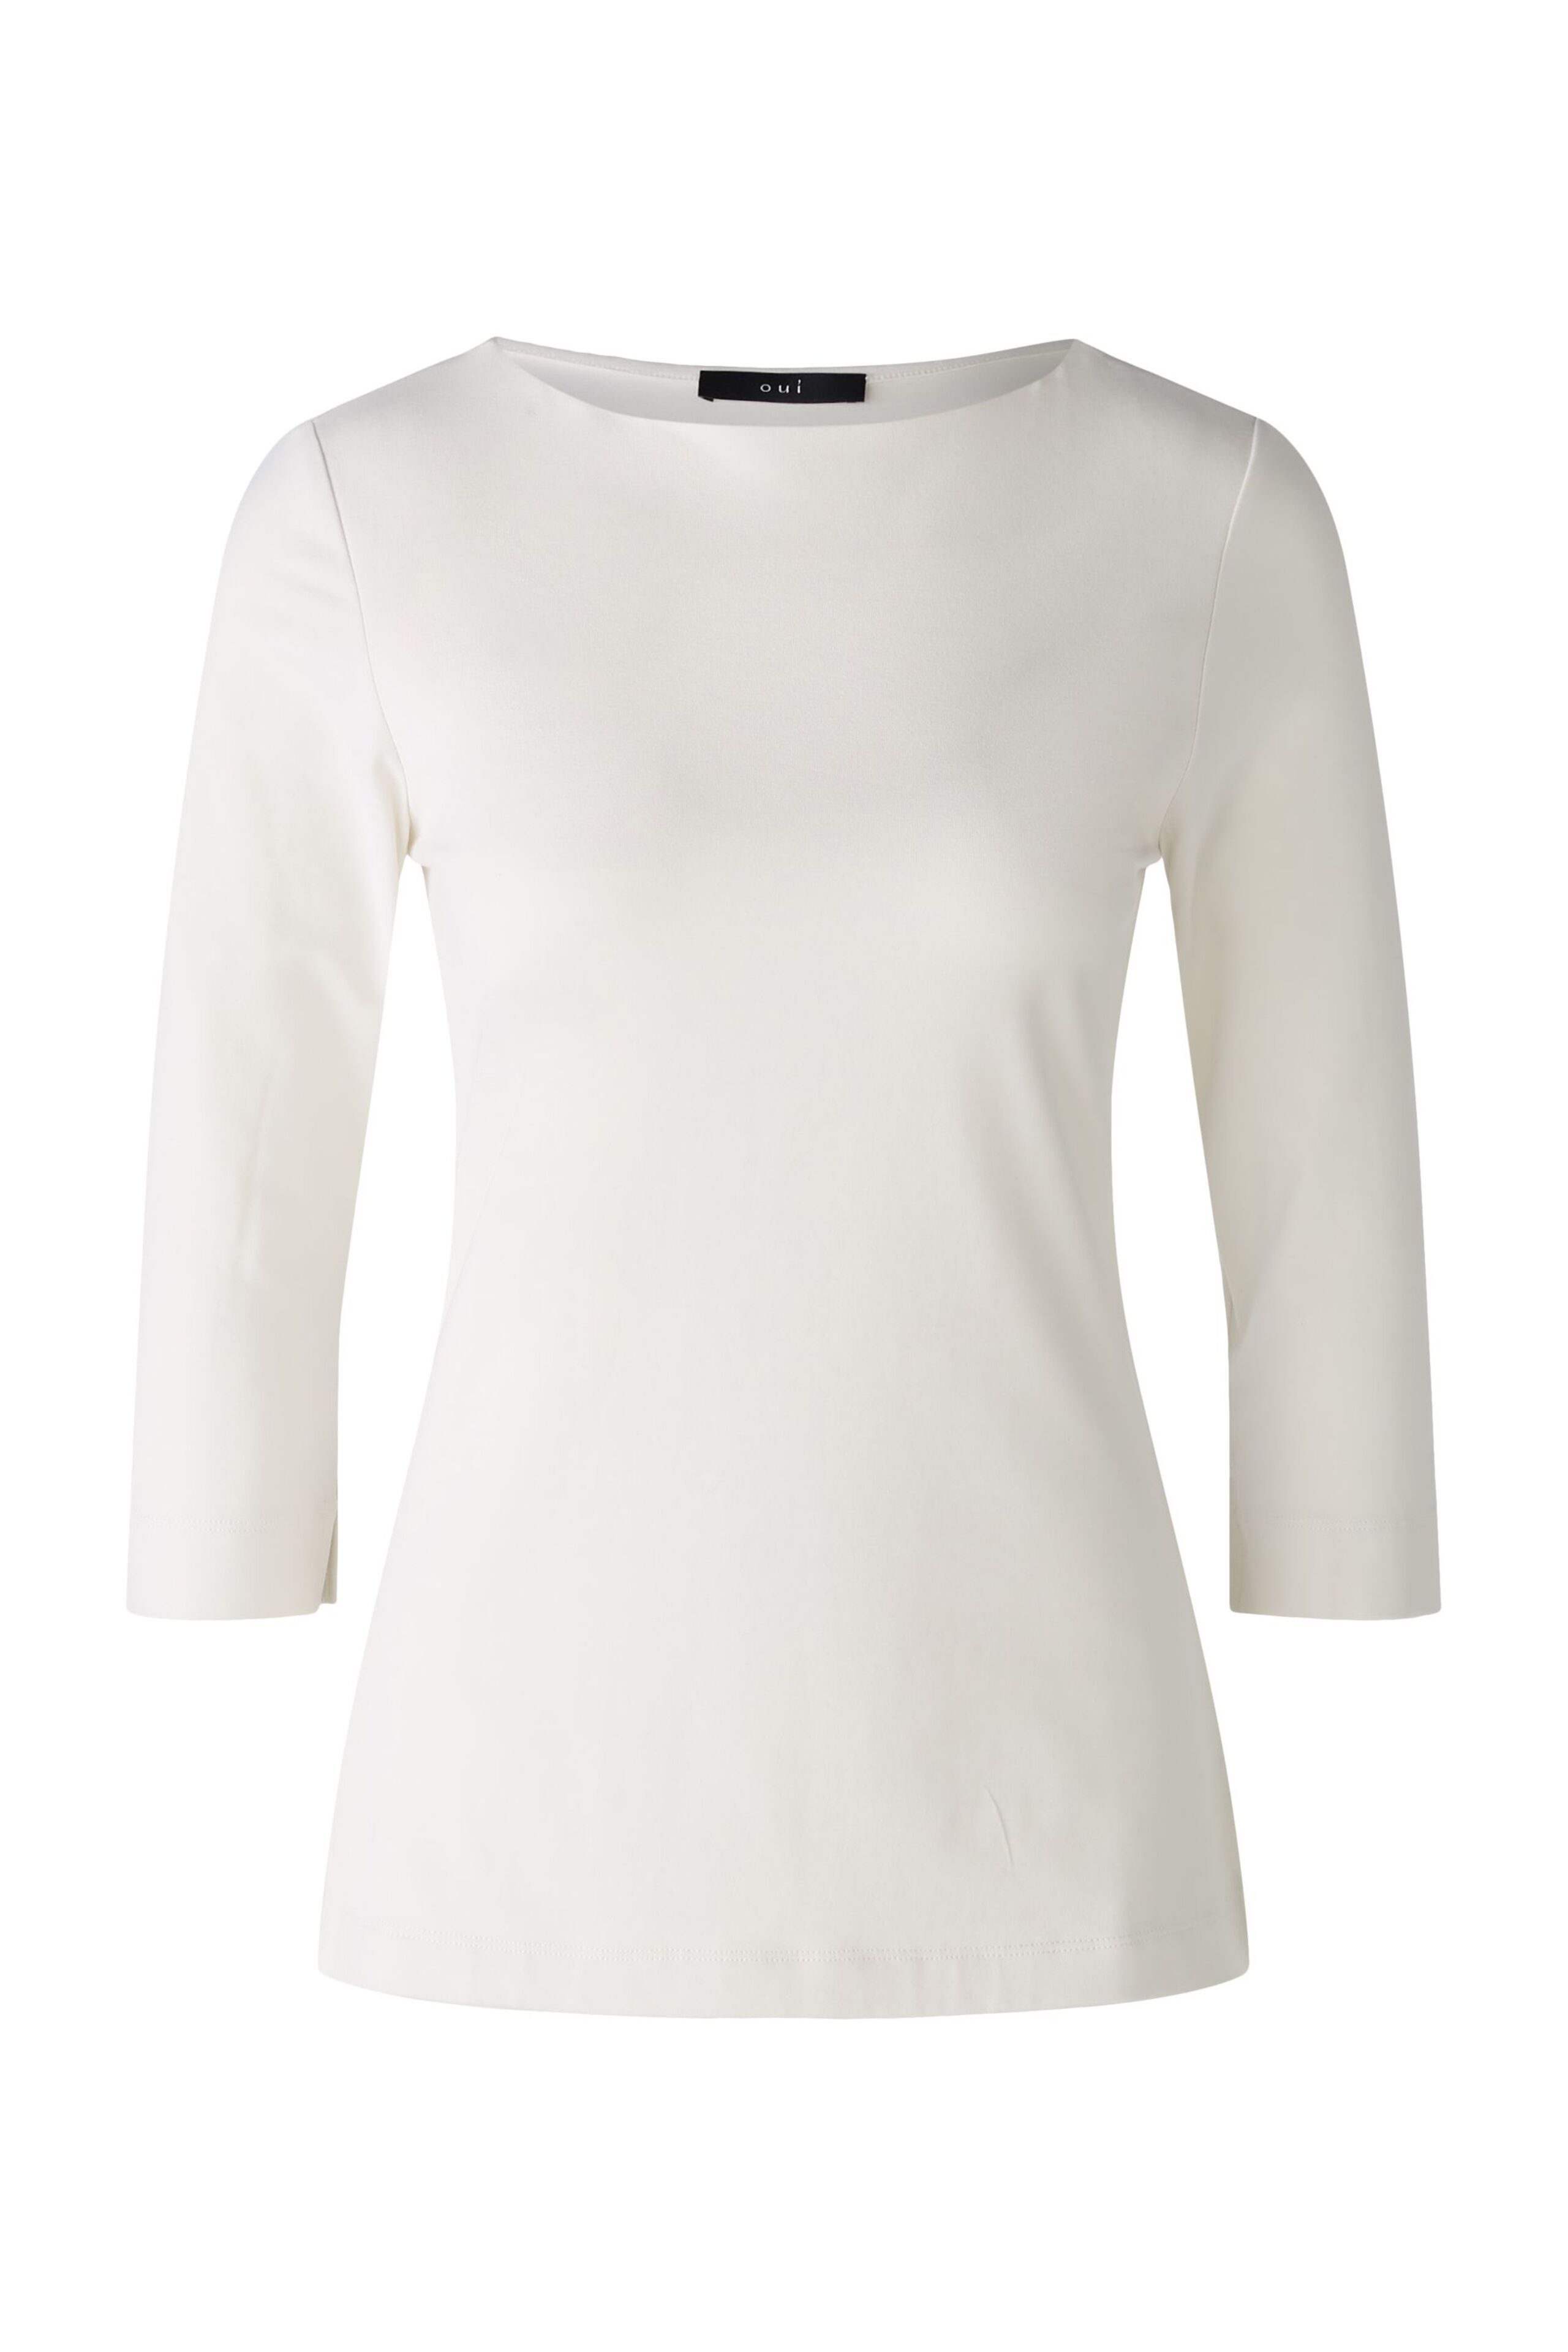 T-Shirt elastische Cotton-/Modalqualität